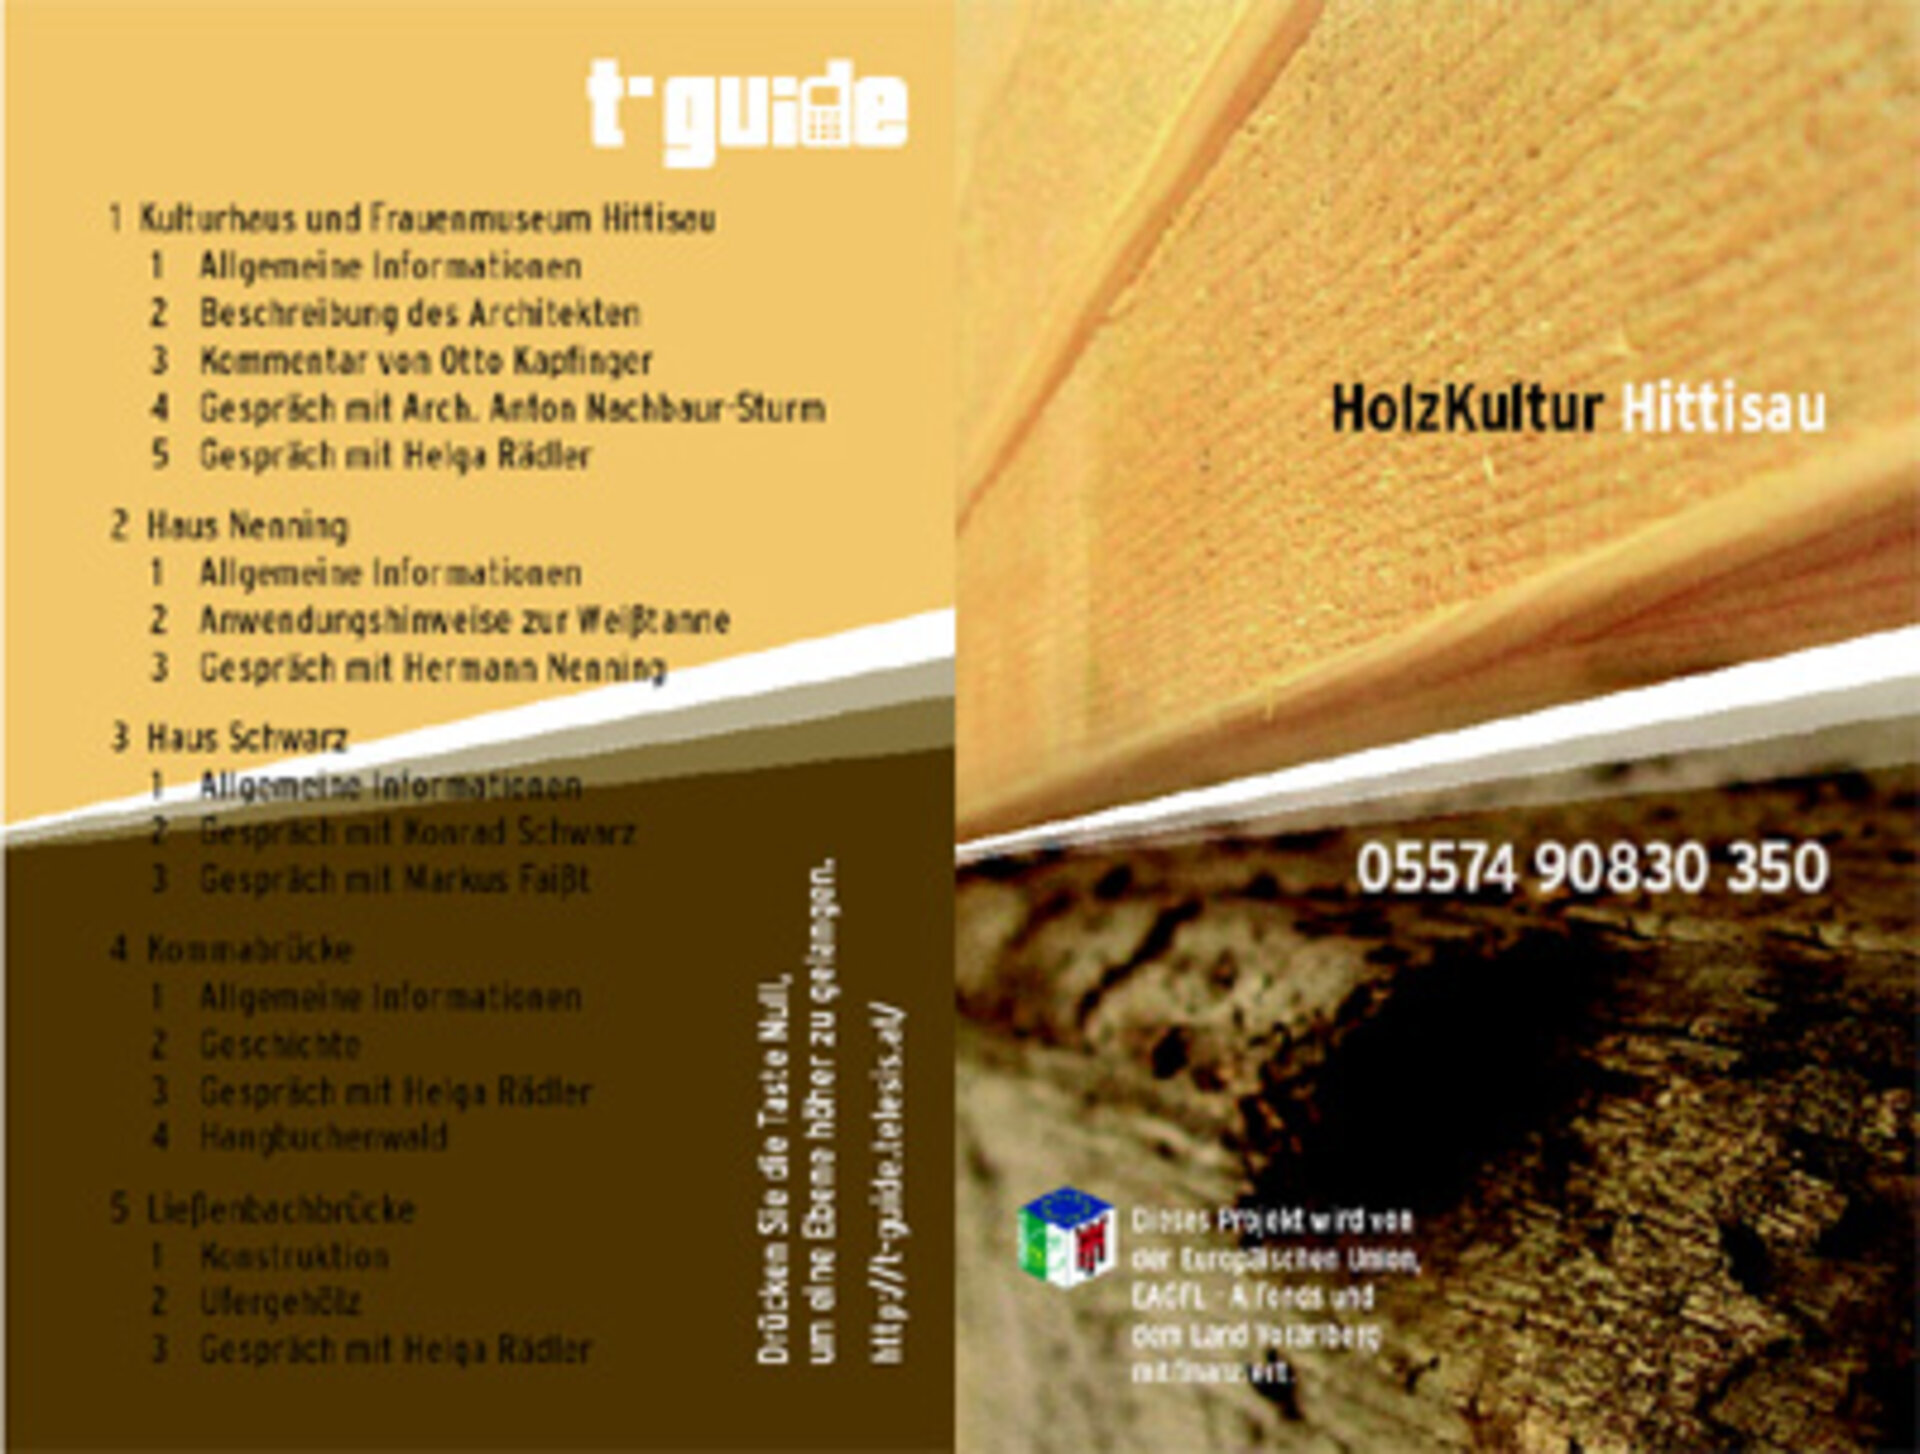 Holzkultur Hittisau - Eine Anwendung von t-guide